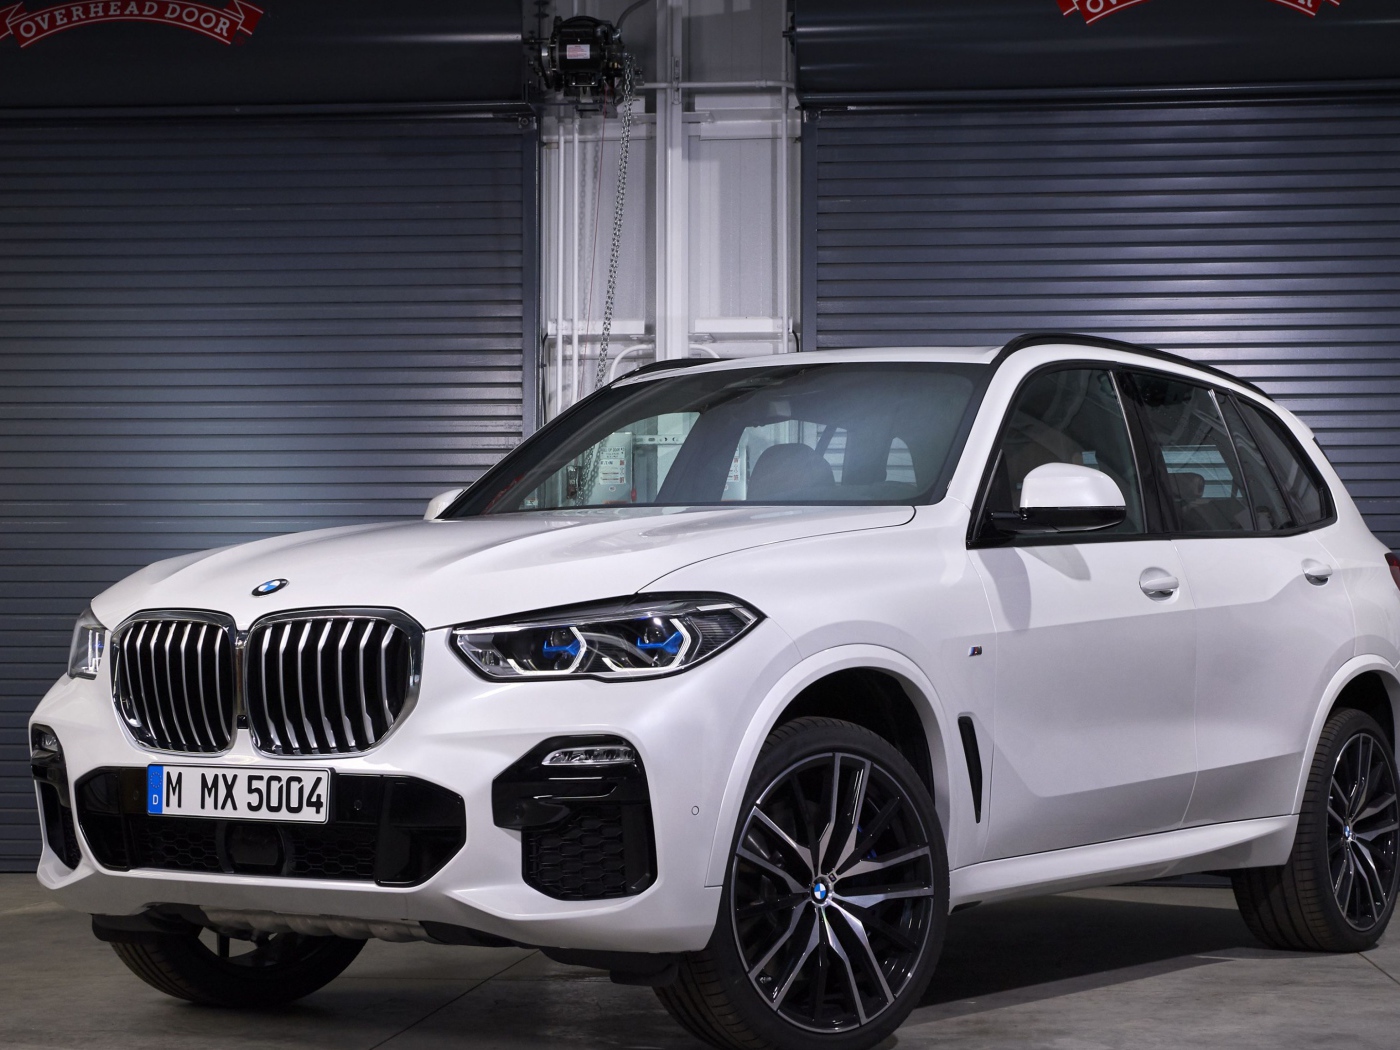 White BMW X5 2019 SUV in the garage